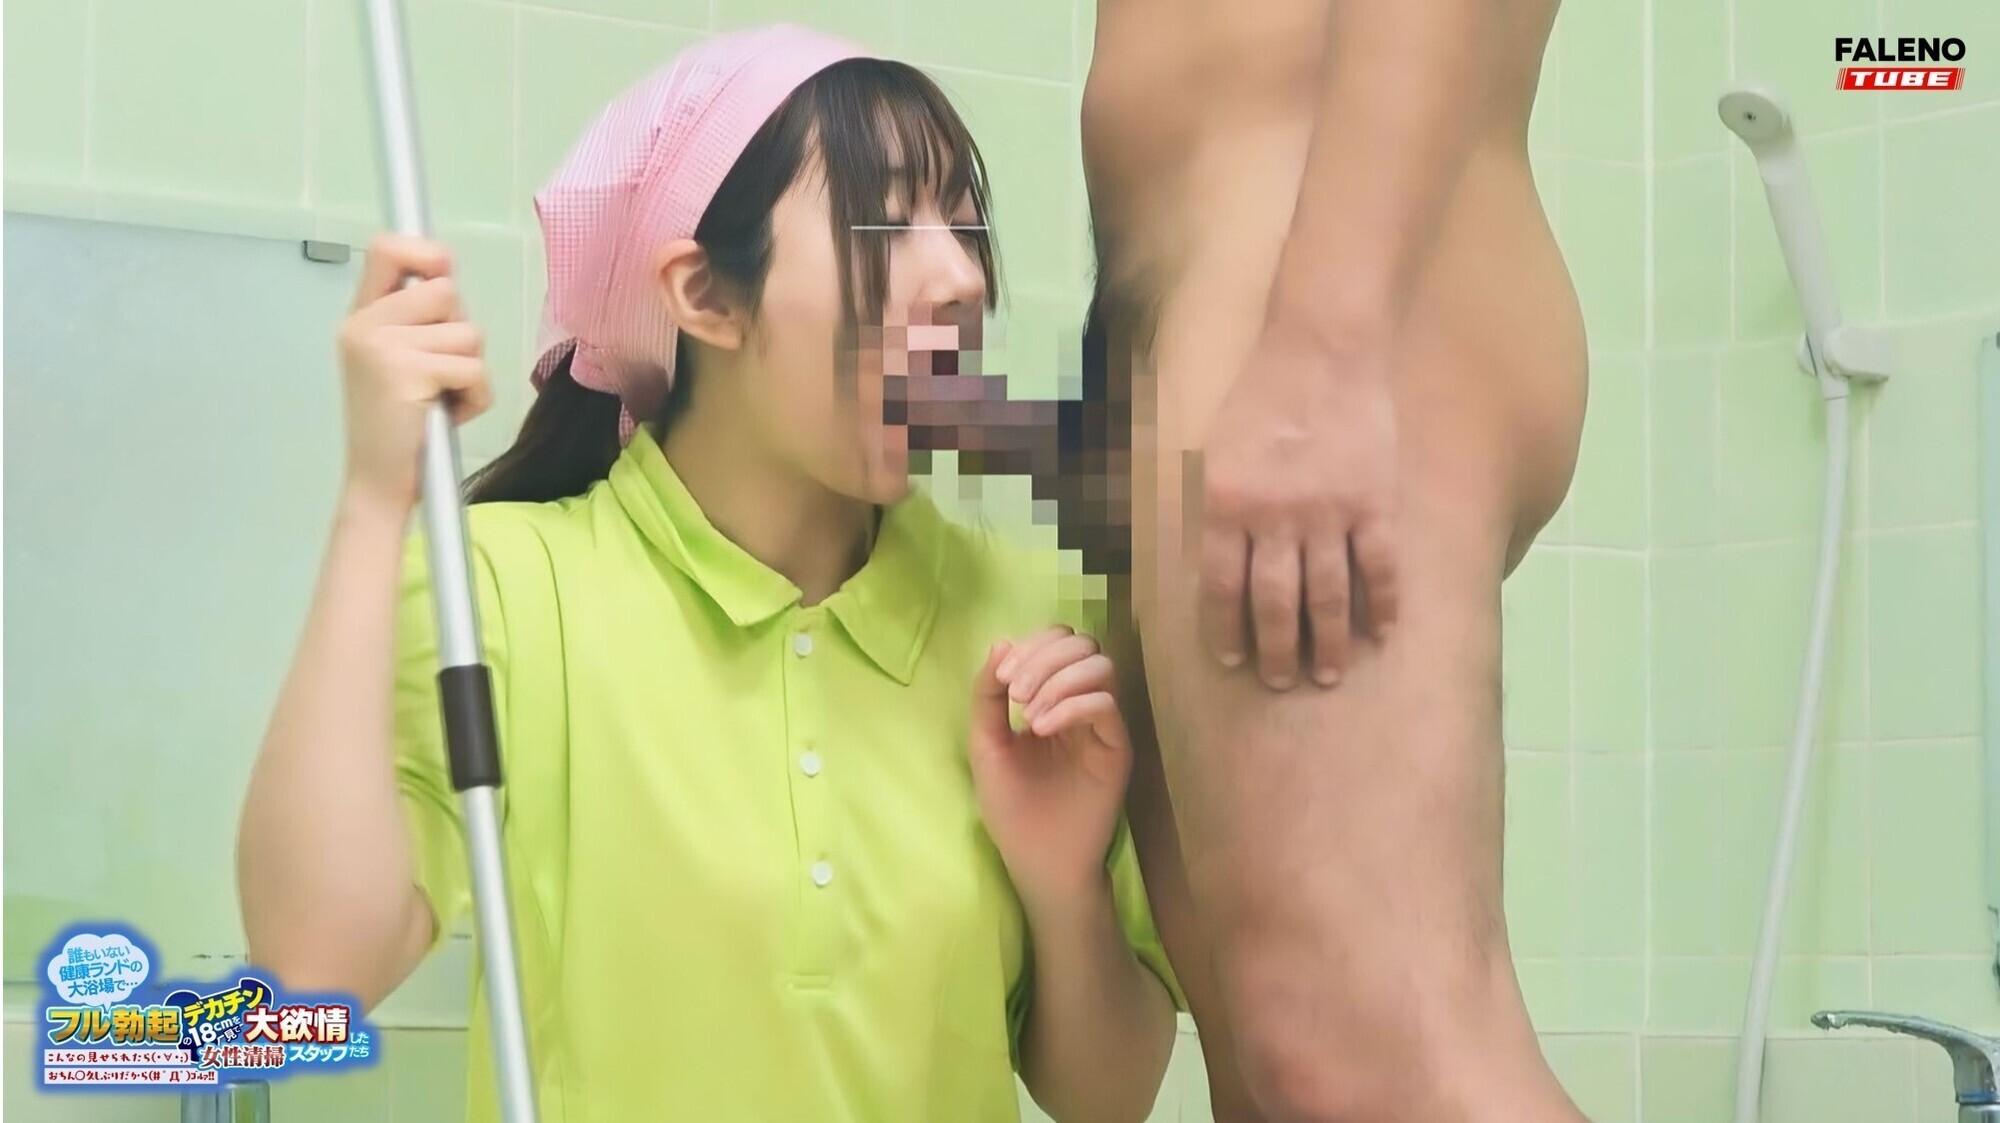 誰もいない健康ランドの大浴場で･･･フル勃起のデカチン18cmを見て大欲情した女性清掃スタッフたち～こんなの見せられたら（・∀・;）おちん○久しぶりだから（＃ ゜Д゜）ゴルァ！！～